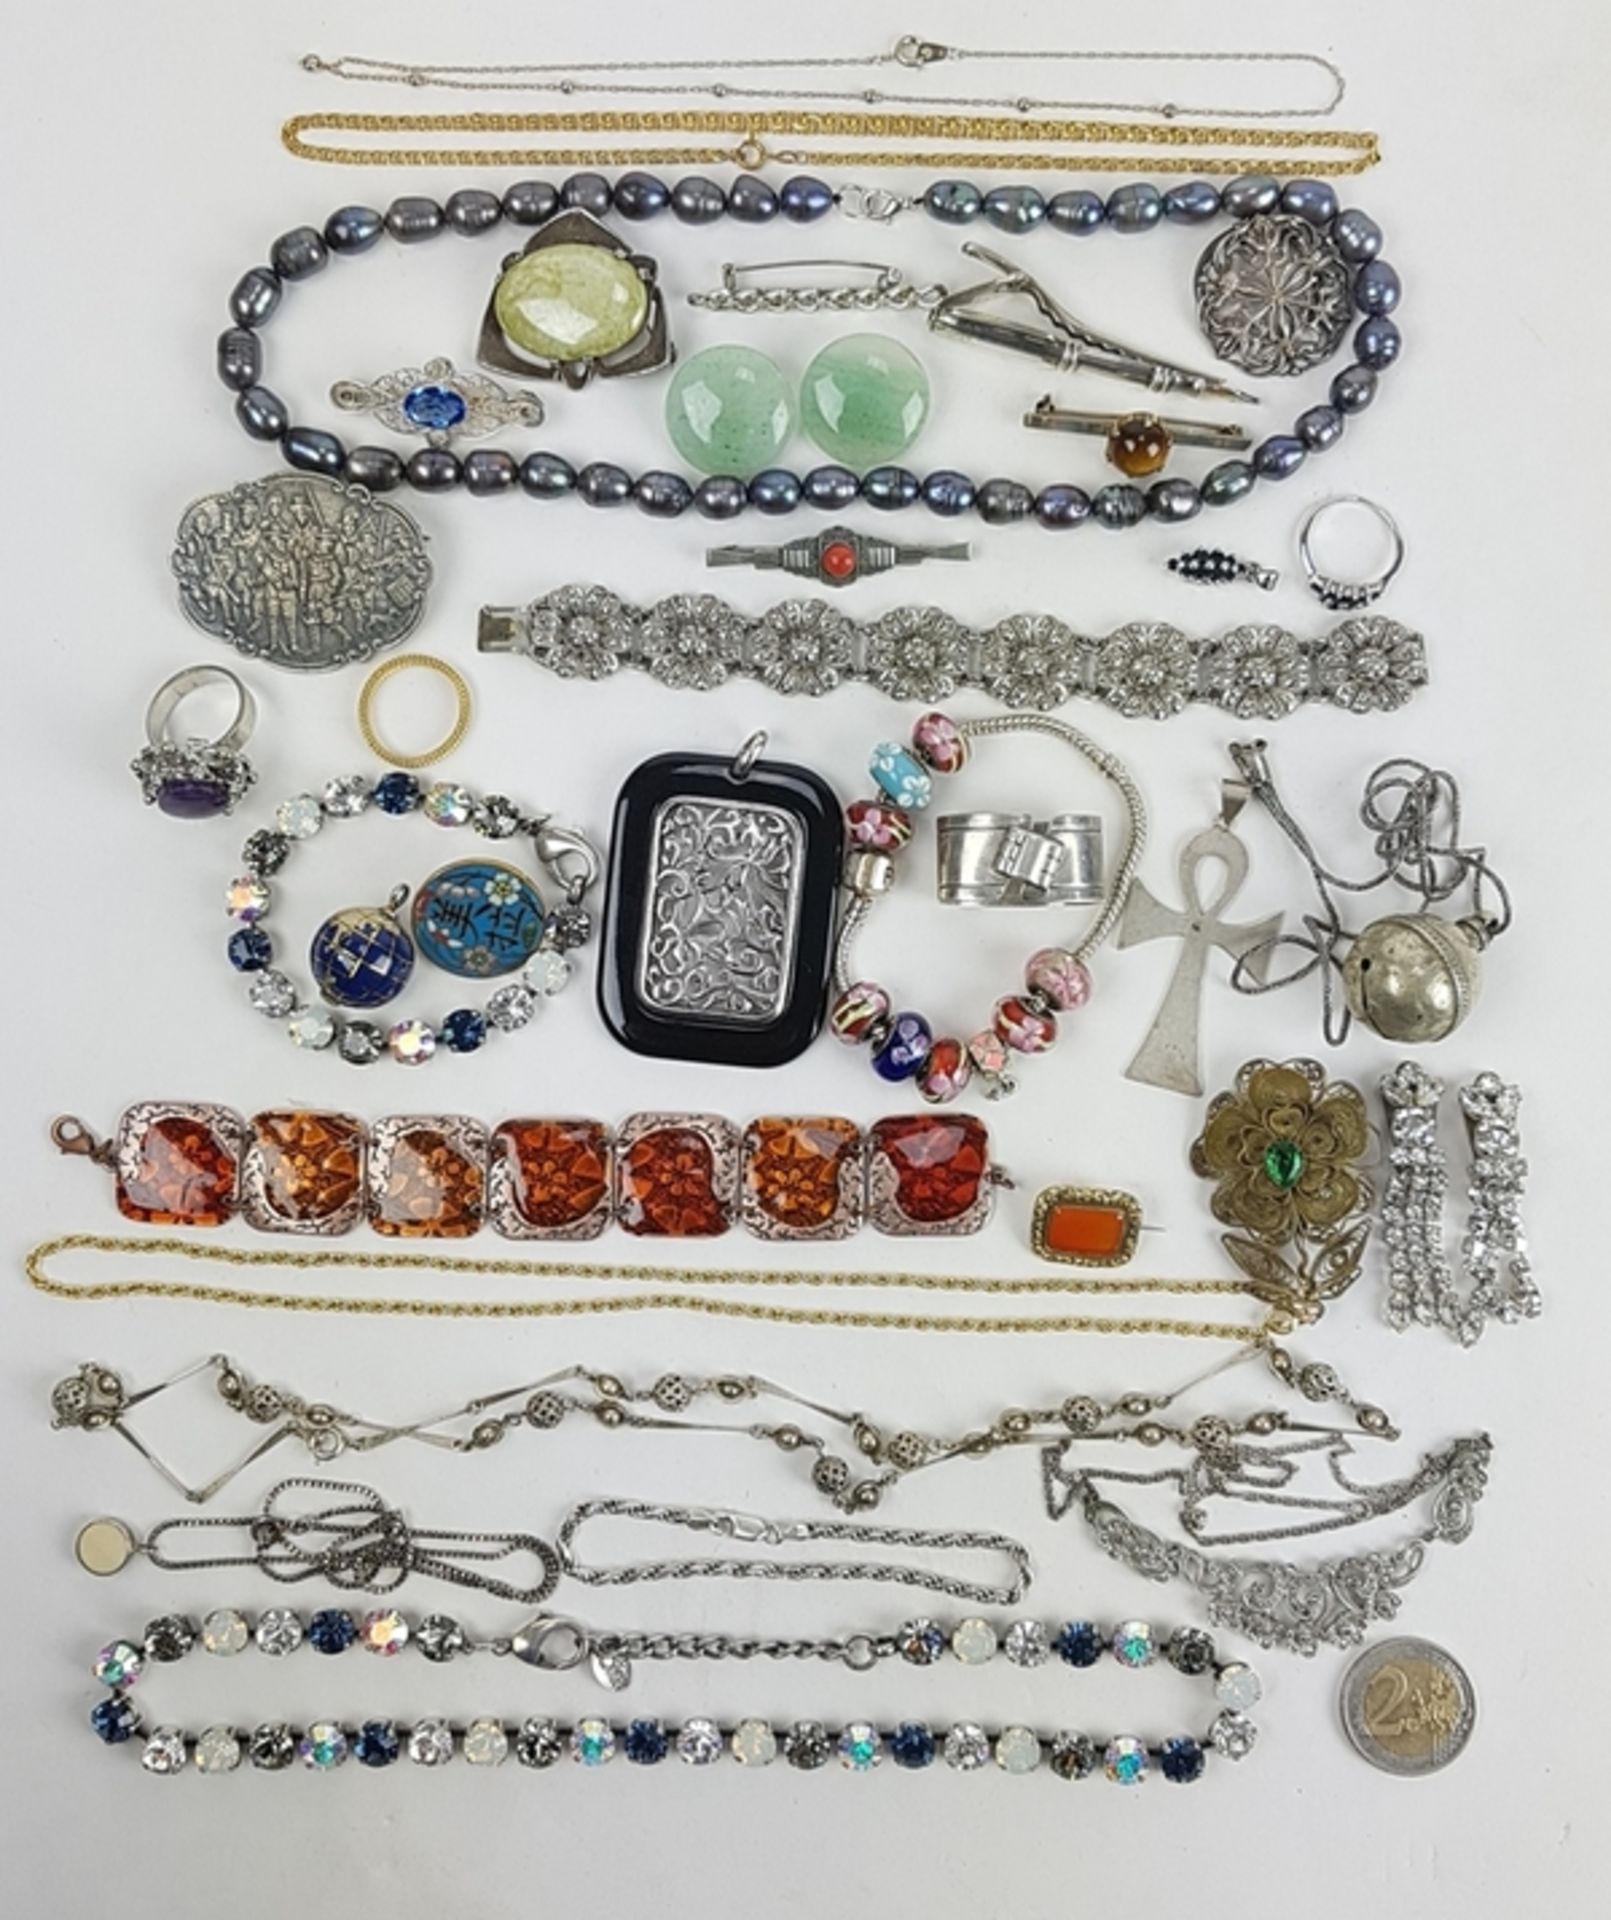 (Sieraden) Diverse materialen, lot van 34 stuks diverse sieraden, 20e eeuwDiverse materialen w - Bild 2 aus 15